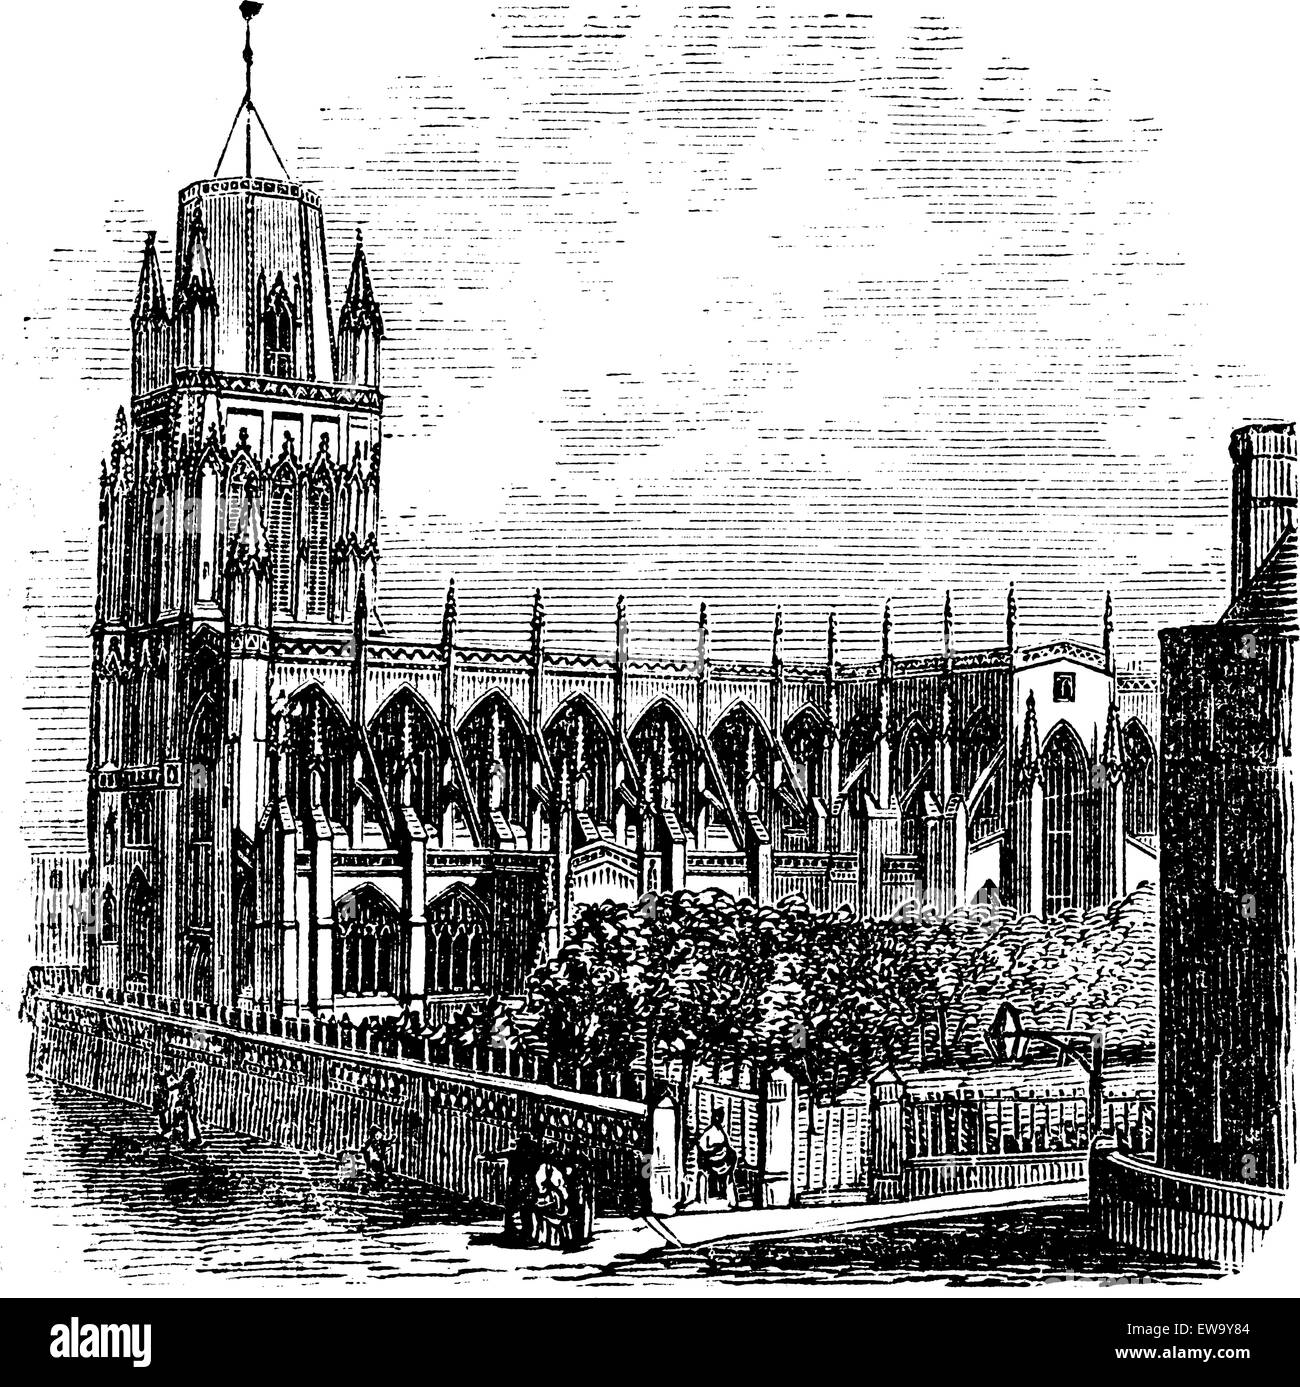 Saint Mary Redcliffe - Anglikanische Kirche in Bristol, England (Vereinigtes Königreich). Vintage Gravur von 1890. Alte eingravierte Darstellung der saint-mary Redcliffe. Stock Vektor